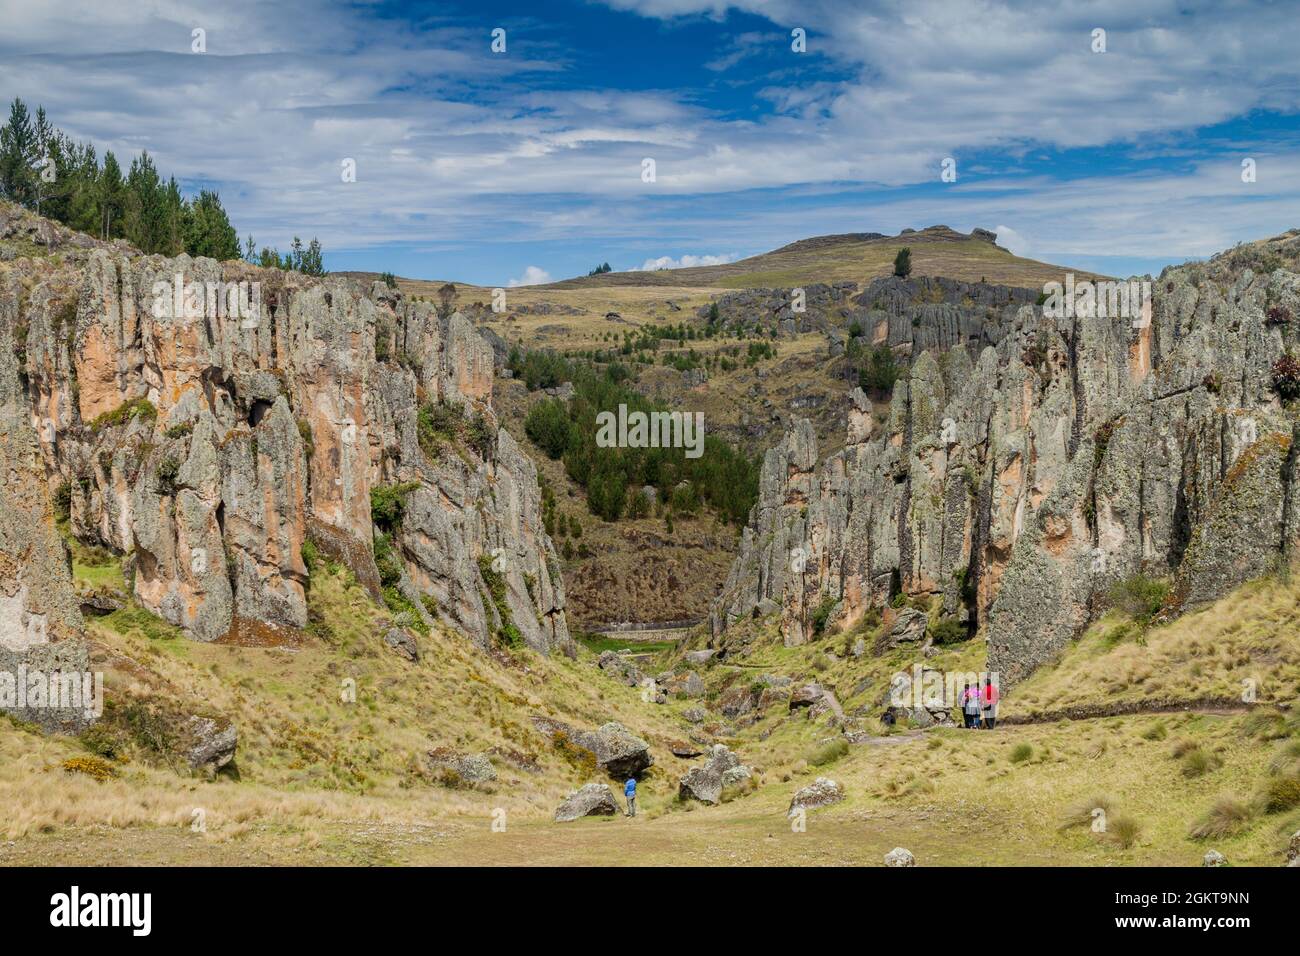 CAJAMARCA, PERÙ - 8 GIUGNO 2015: I turisti visitano Los Frailones (Monaci di pietra), formazioni rocciose vicino Cajamarca, Perù. Foto Stock